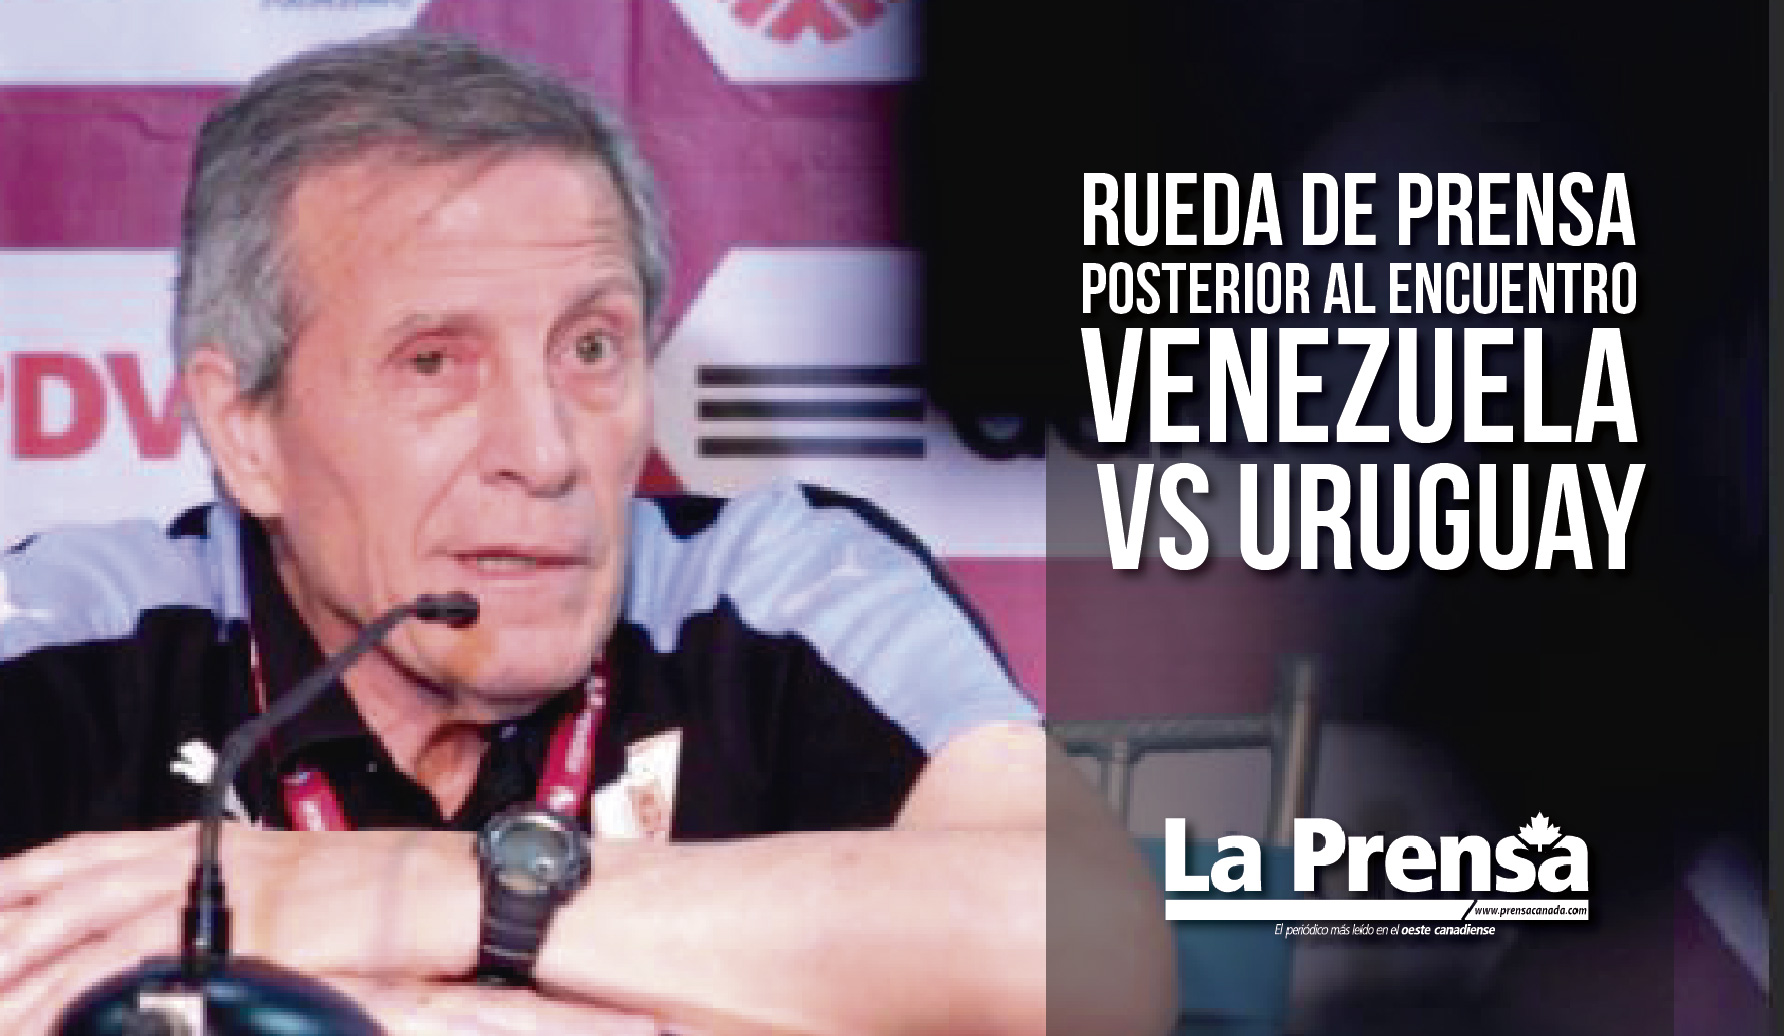 Rueda de prensa posterior al encuentro Venezuela vs Uruguay